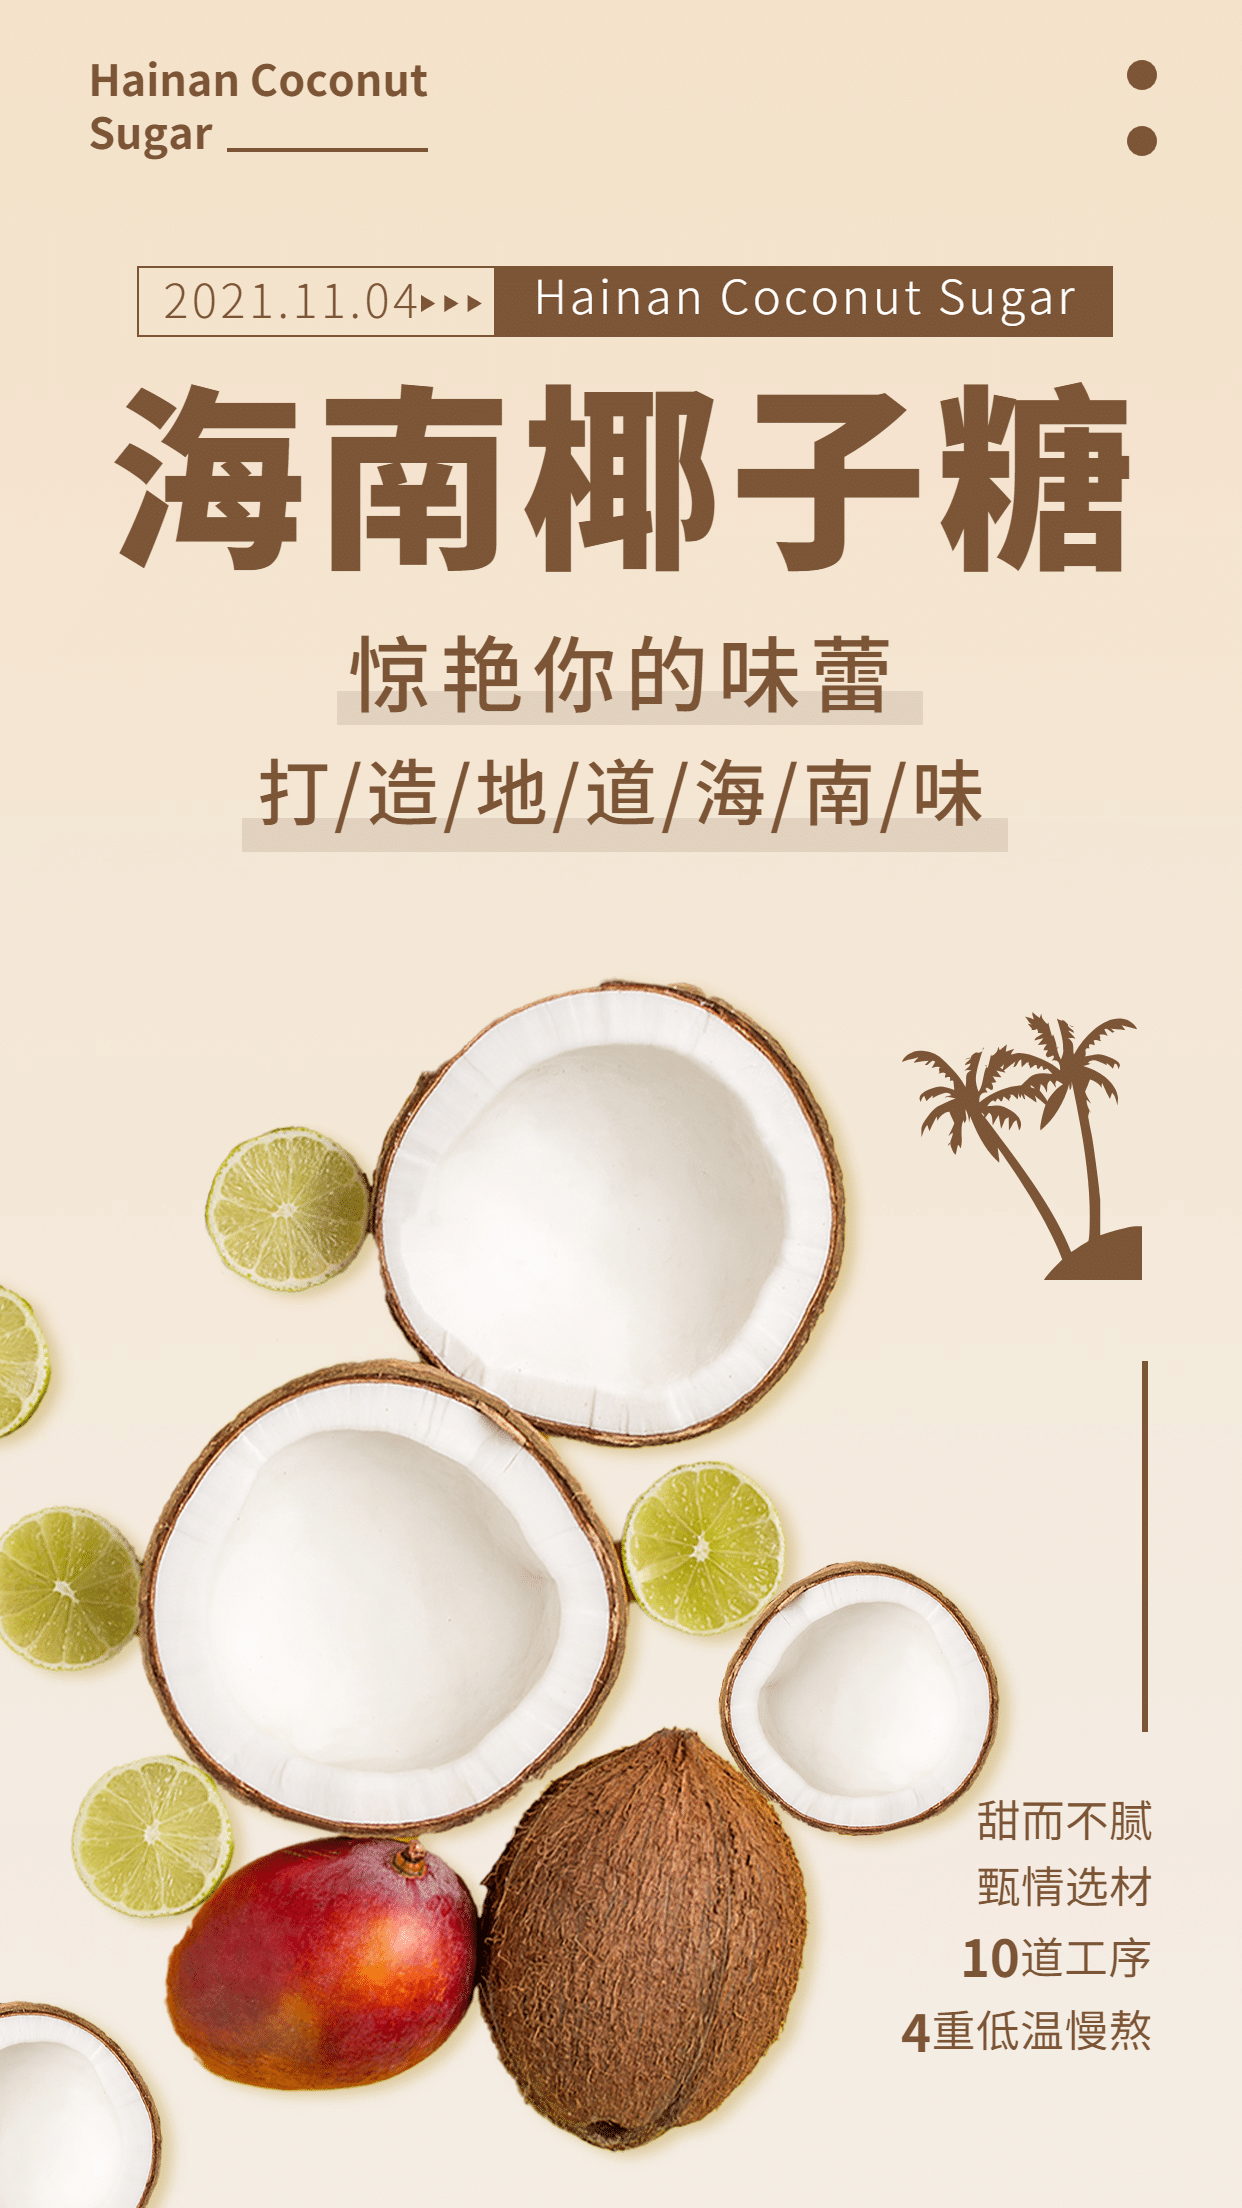 特产椰子糖产品展示介绍手机海报预览效果